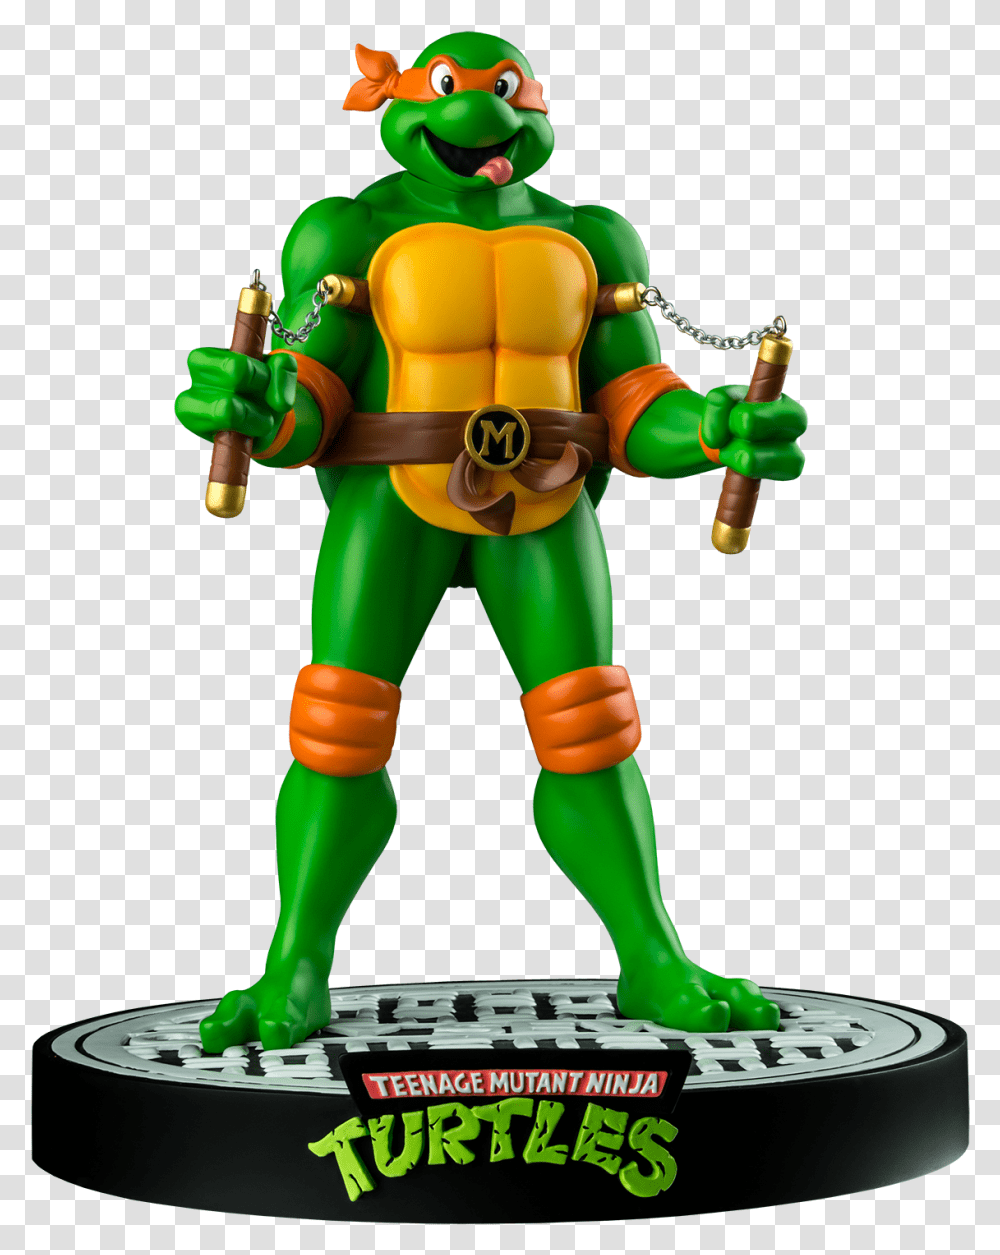 Teenage Mutant Ninja Turtles Ninja Turtles, Toy, Green, Figurine, Alien Transparent Png